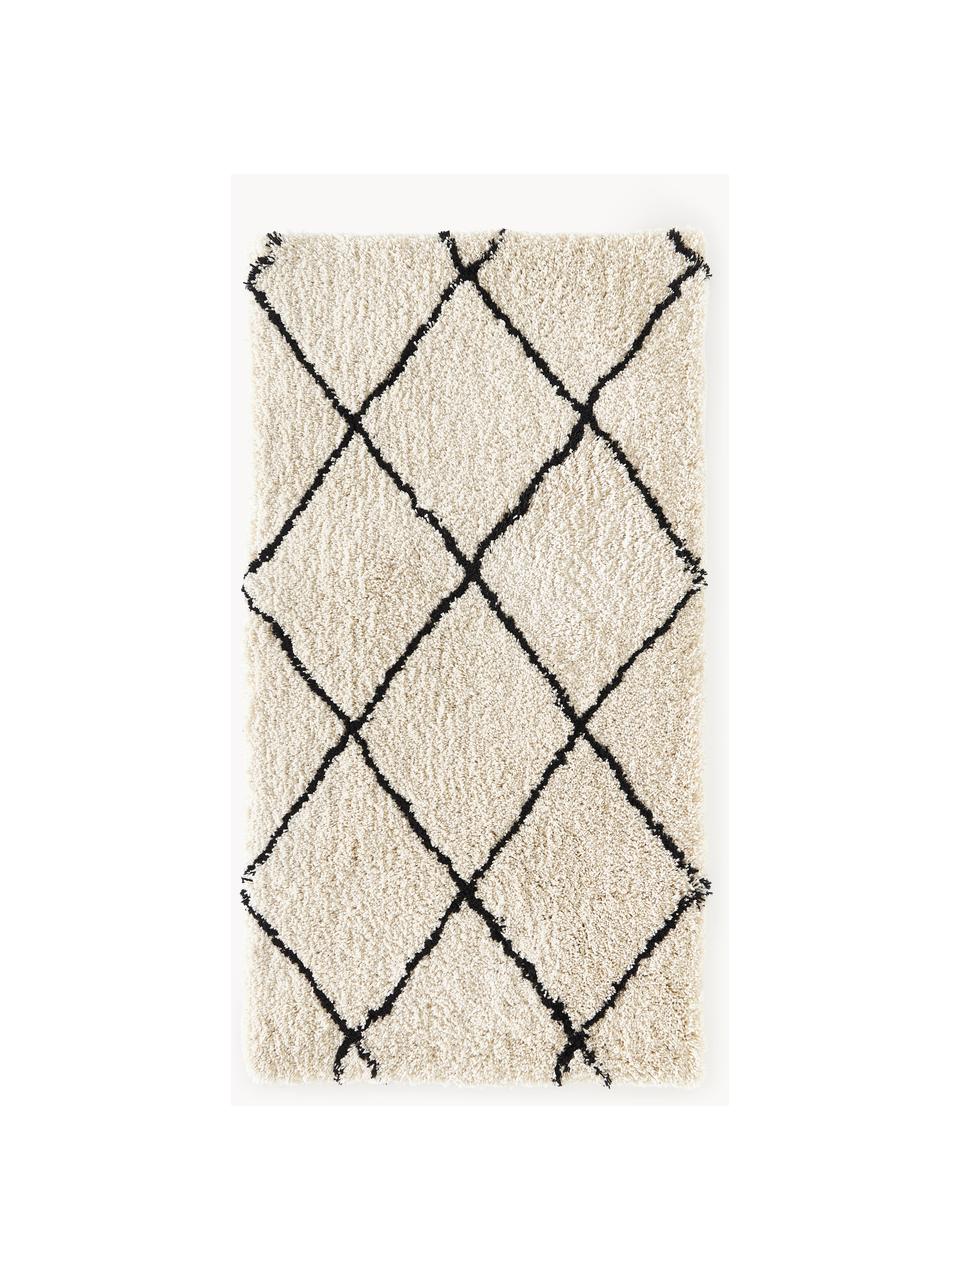 Nadýchaný ručně tkaný koberec s vysokým vlasem Naima, Béžová, černá, Š 400 cm, D 500 cm (velikost XXL)